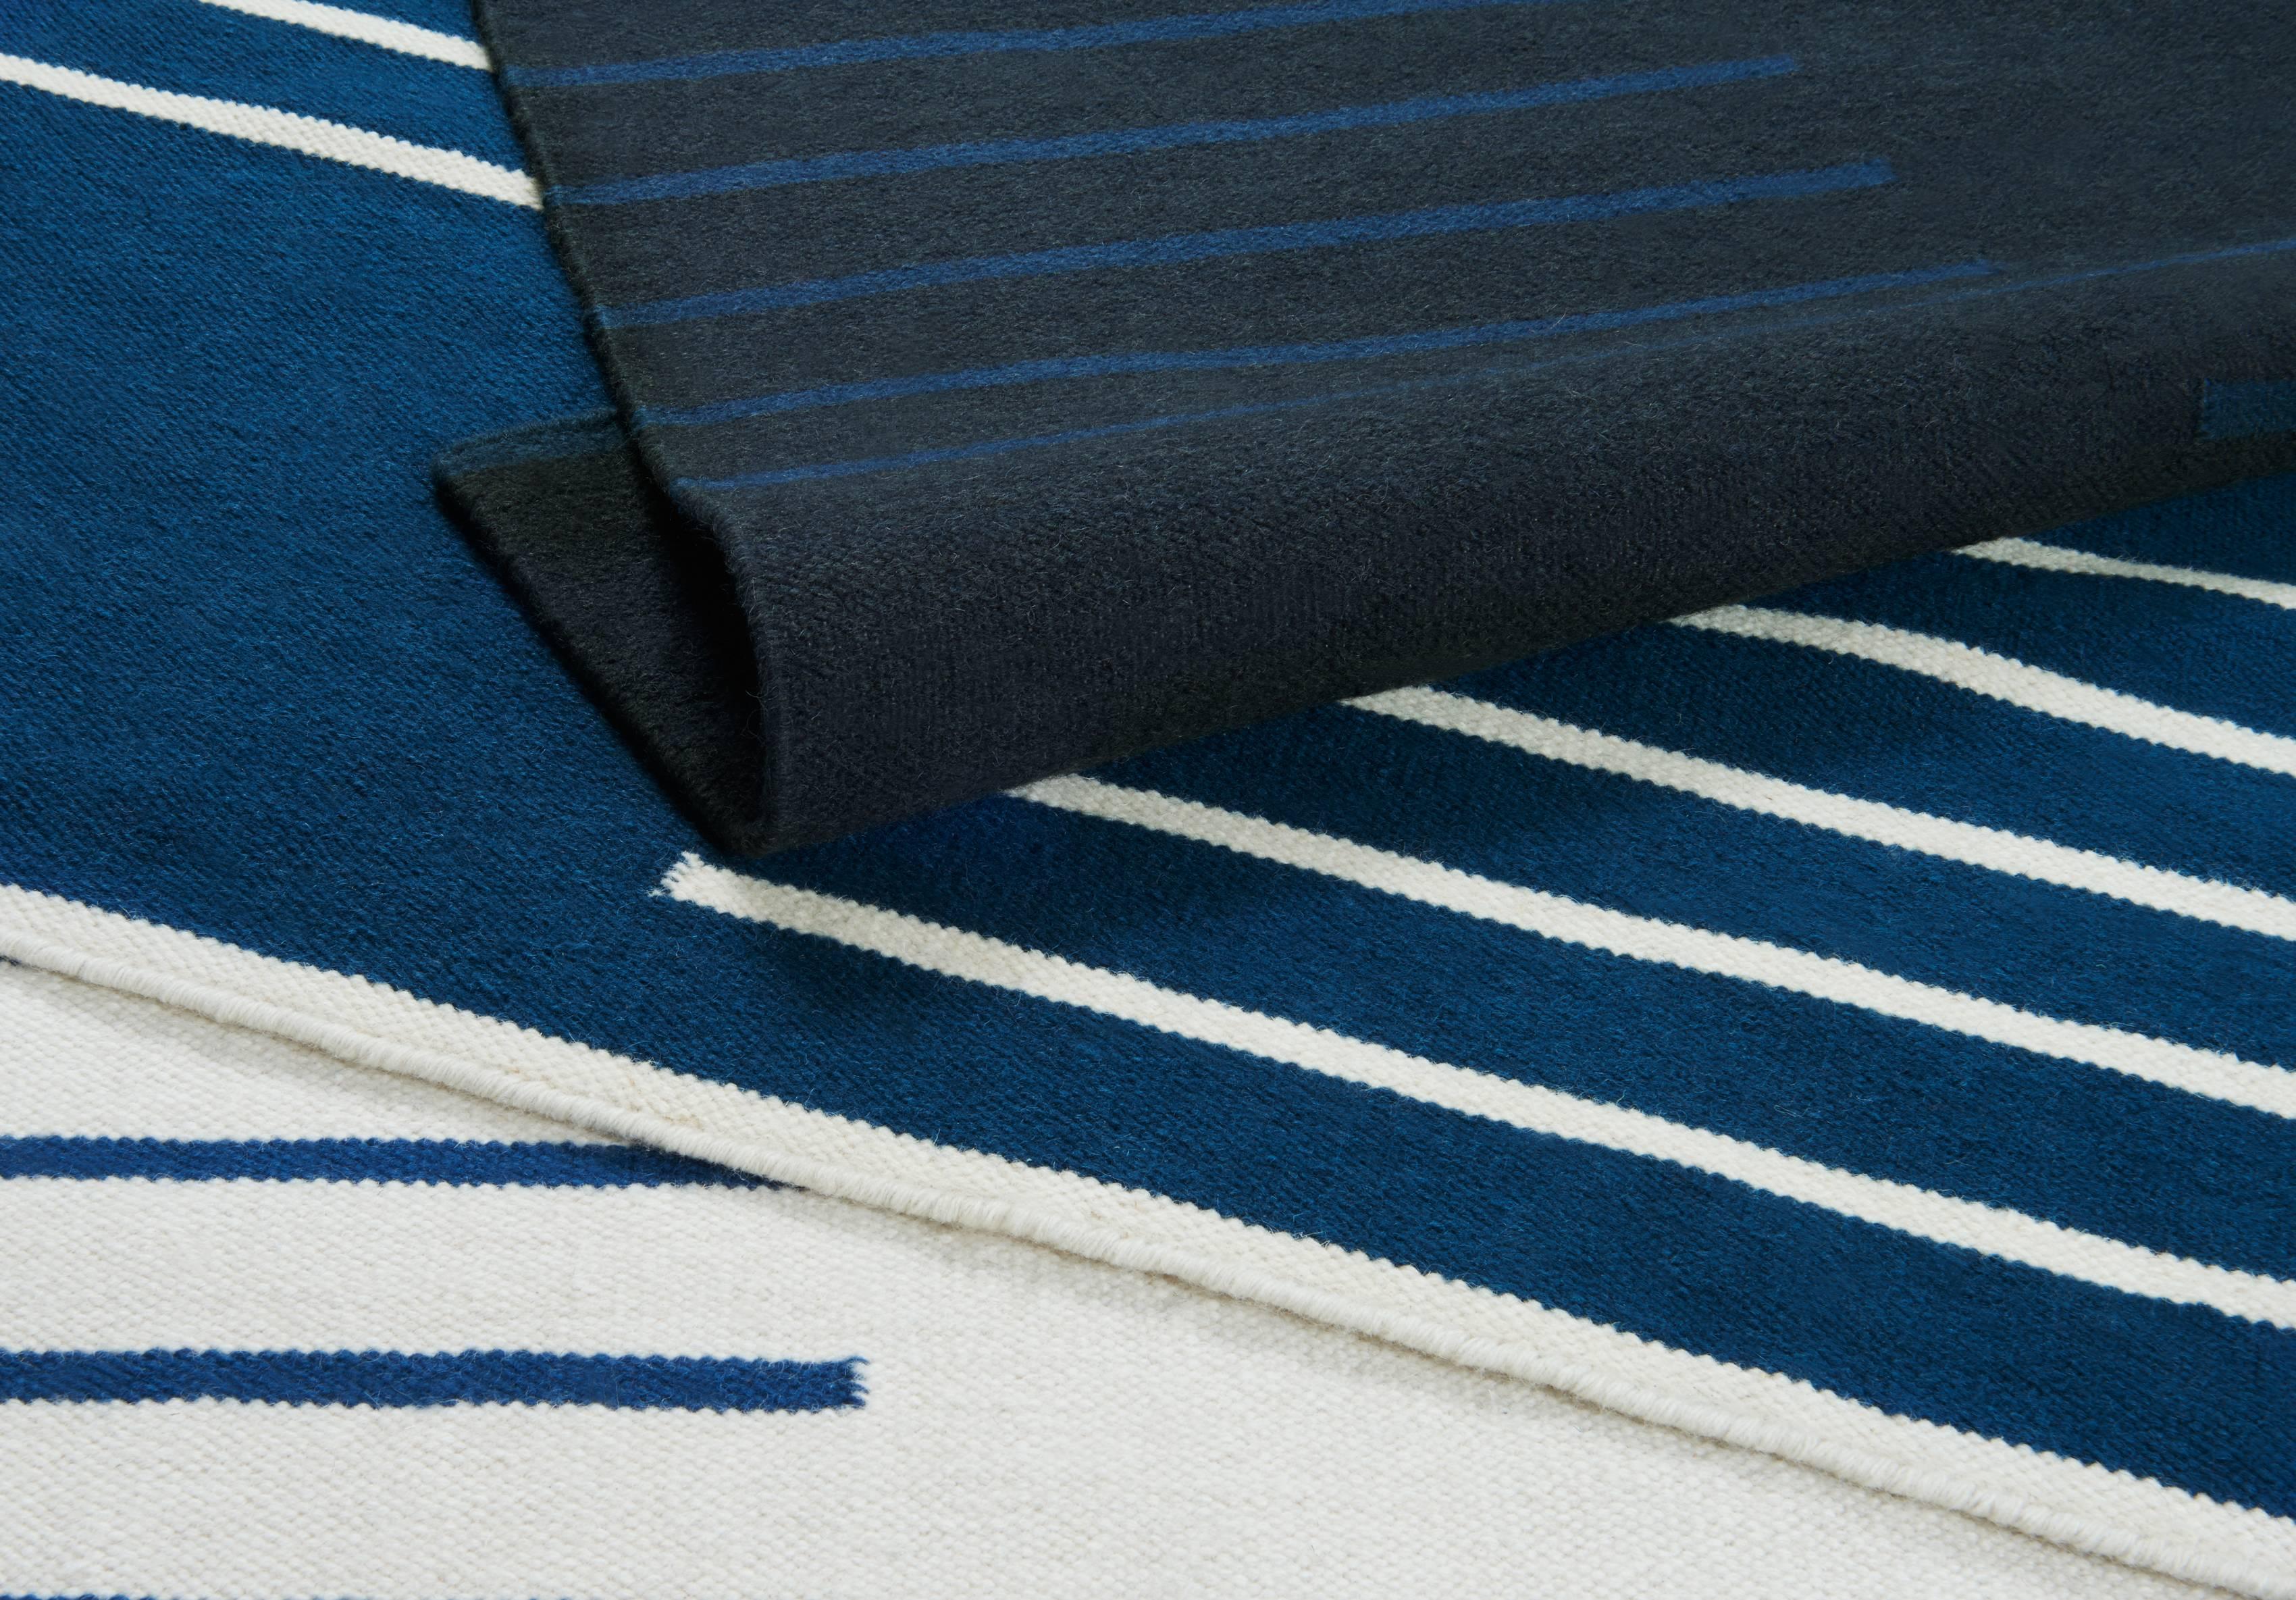 Classic Cream/Blue ist ein moderner Dhurrie/Kilim-Teppich im skandinavischen Design. Er ist in verschiedenen Größen erhältlich - siehe Anpassungsmöglichkeiten unten.

Ein traditionelles Design, inspiriert von klassischen skandinavischen Mustern. Der